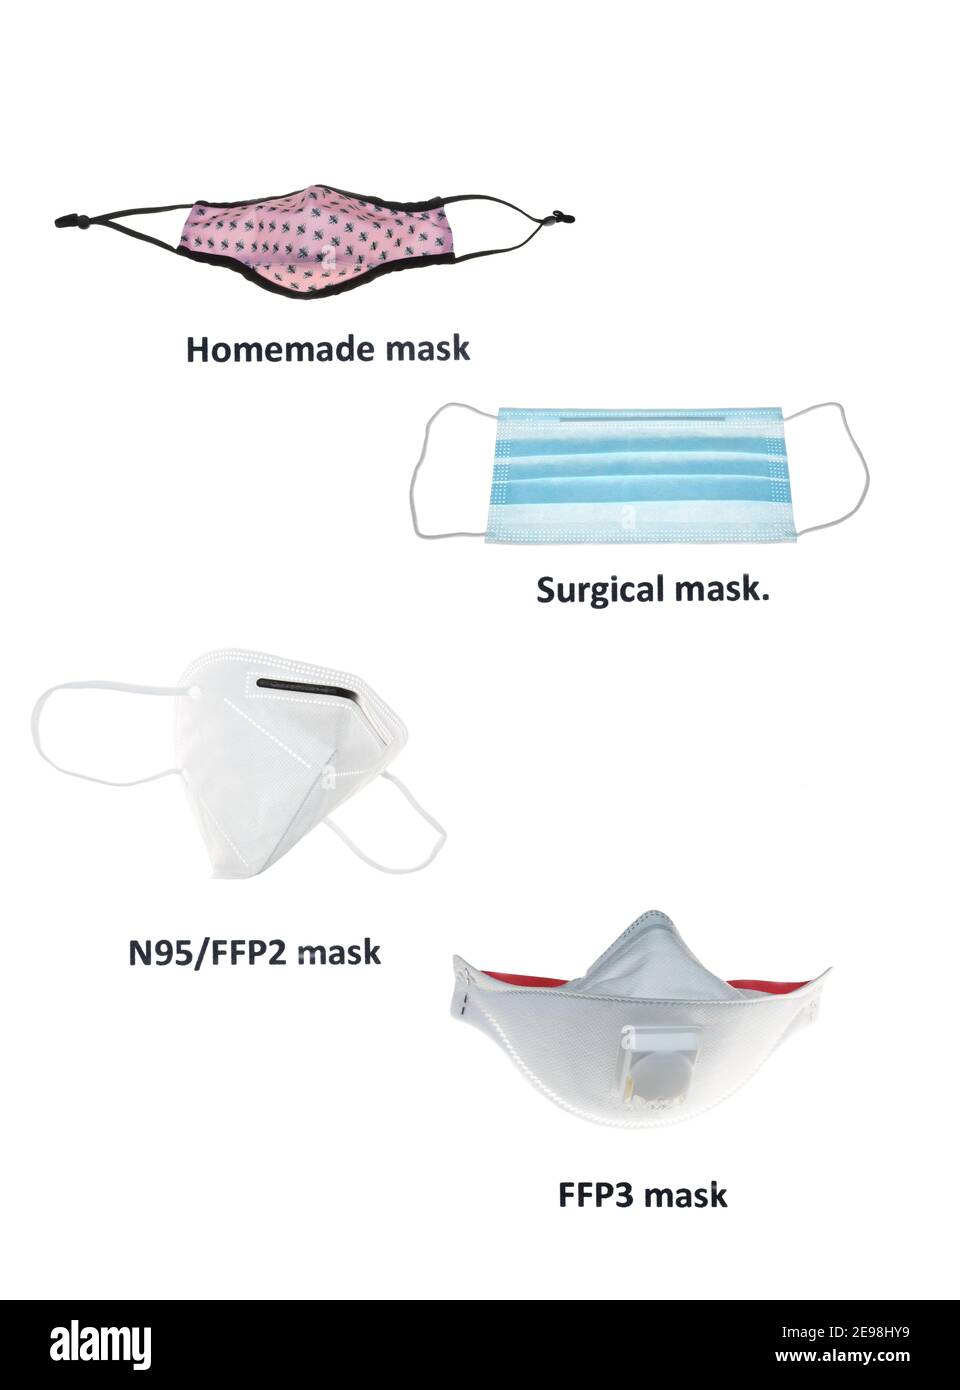 Quattro maschere che danno diversi gradi di protezione contro il Covid-19, tessuto di copertura del viso, maschera chirurgica, N95, FFP2 maschera e FFP3 maschera. Foto Stock